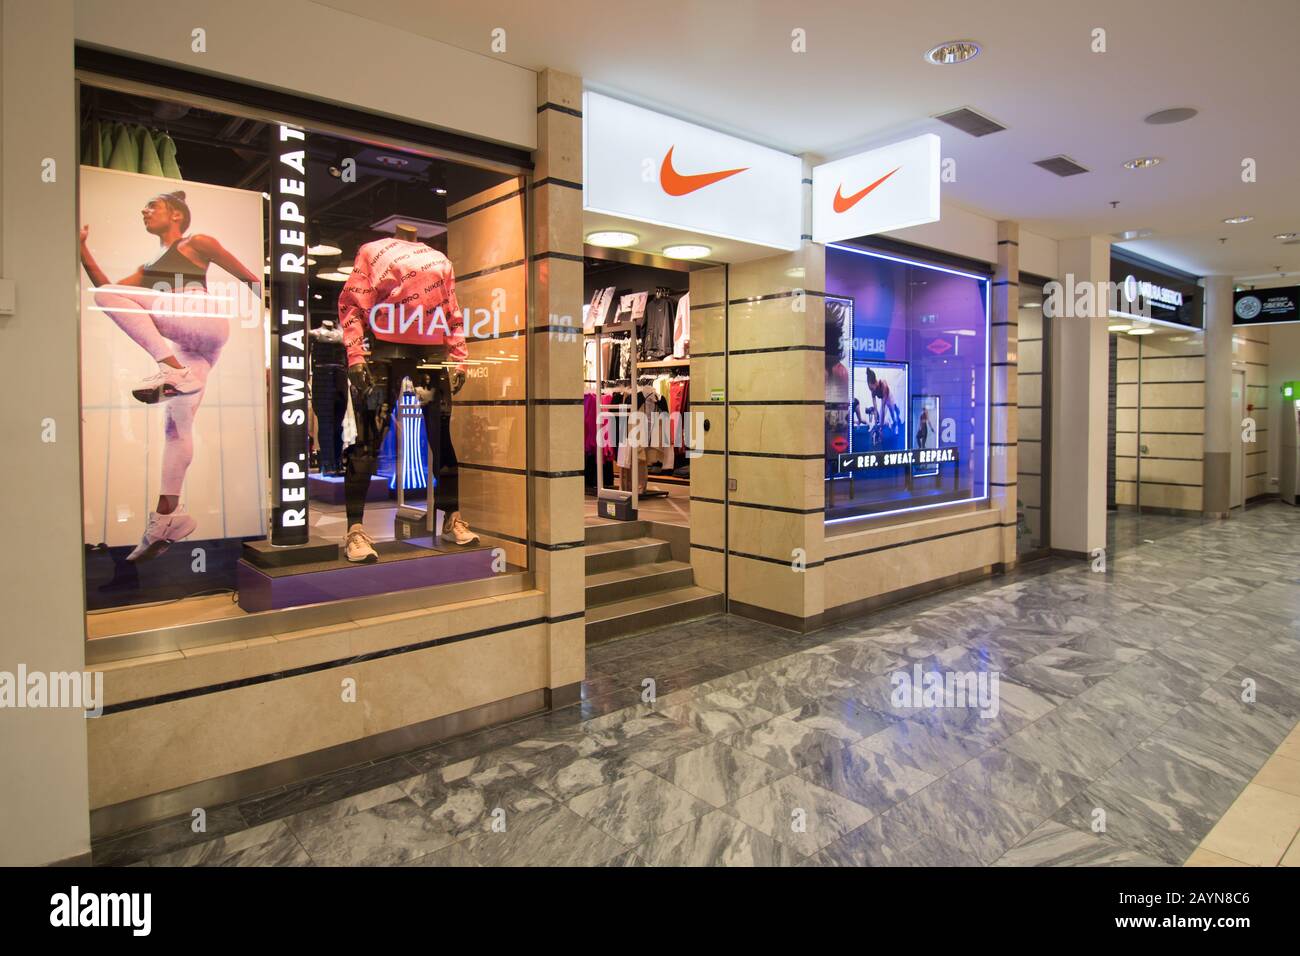 Nike Shop Banque d'image et photos - Alamy